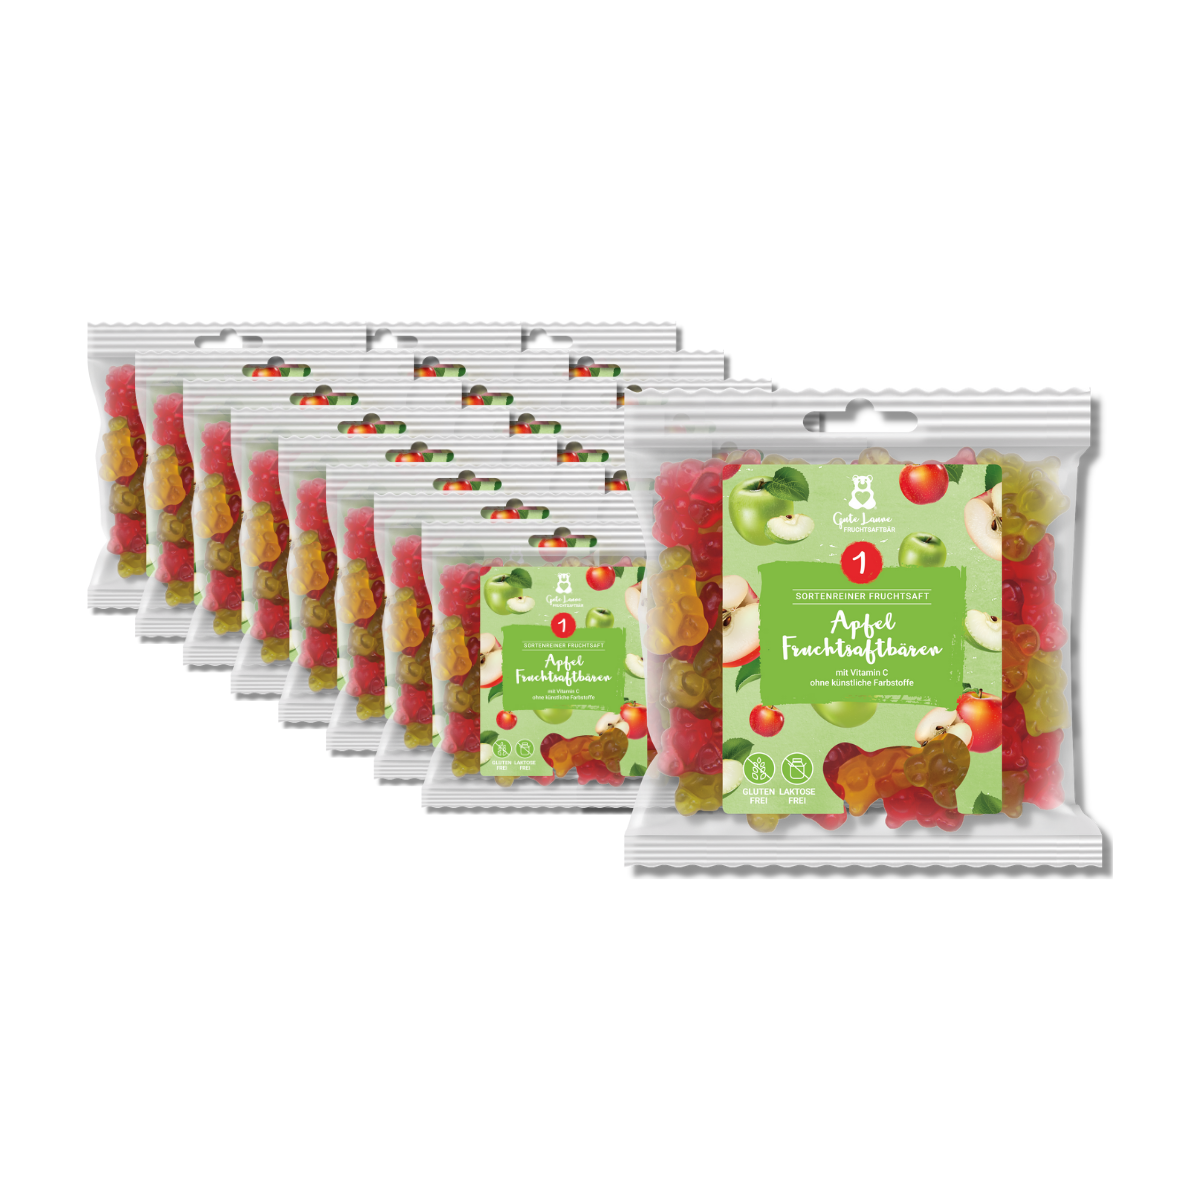 Fruchtgummi Fruchtsaftbären Apfel - Großverpackung (VE mit 23 x 150g Tüten)